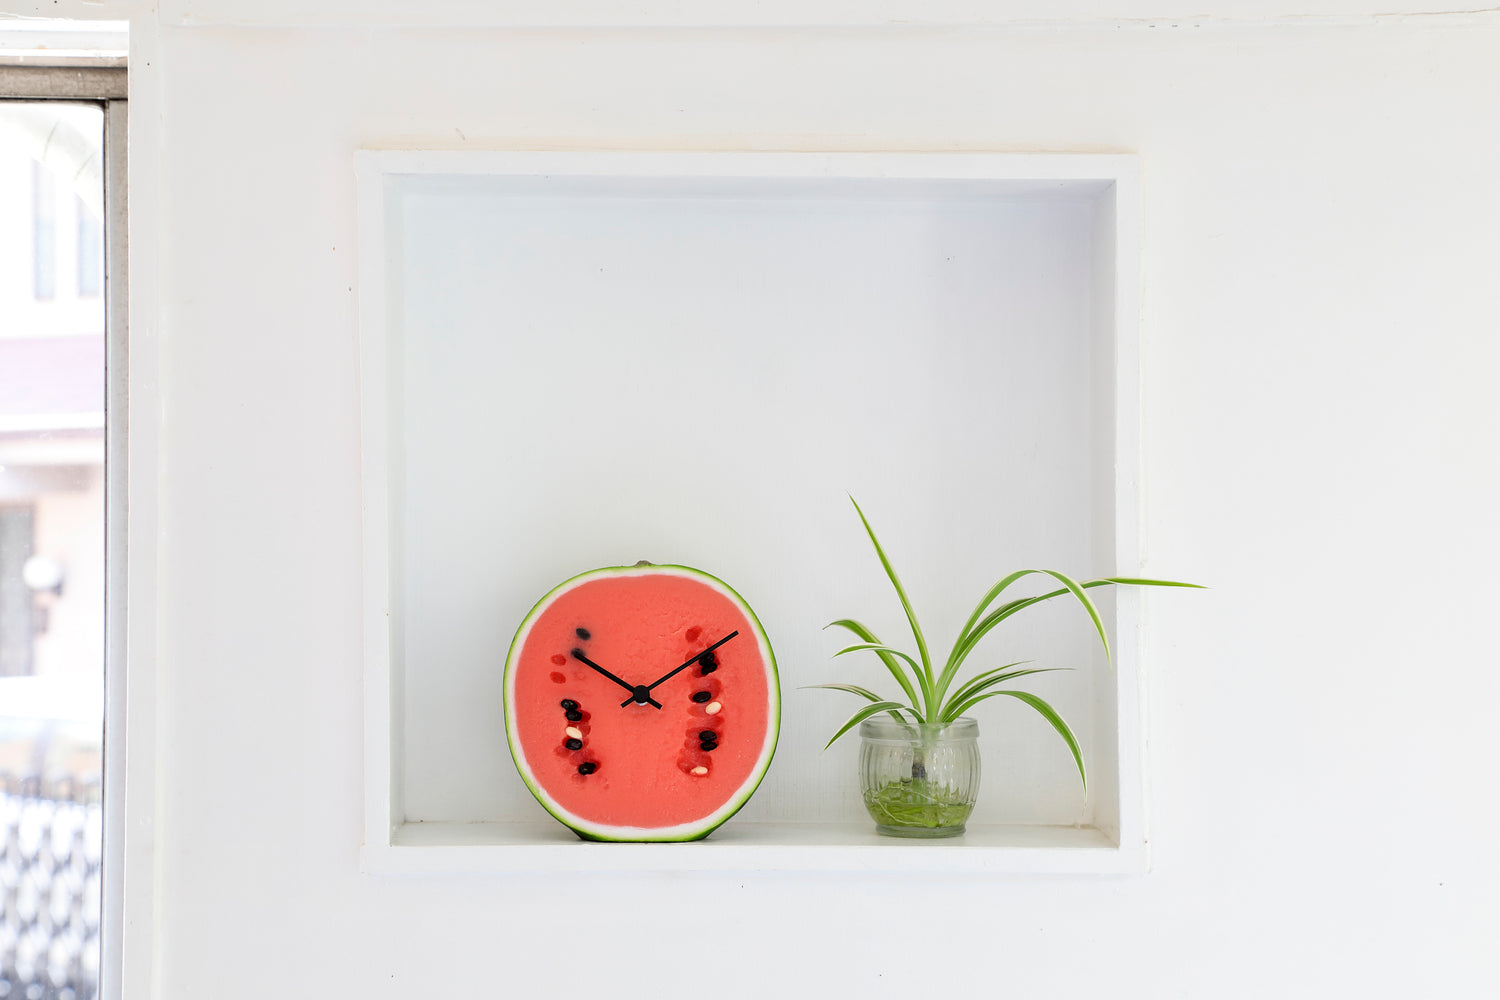 元祖食品サンプル屋「Replica Food Clock スイカ」の植物の隣に置いたイメージ画像です。